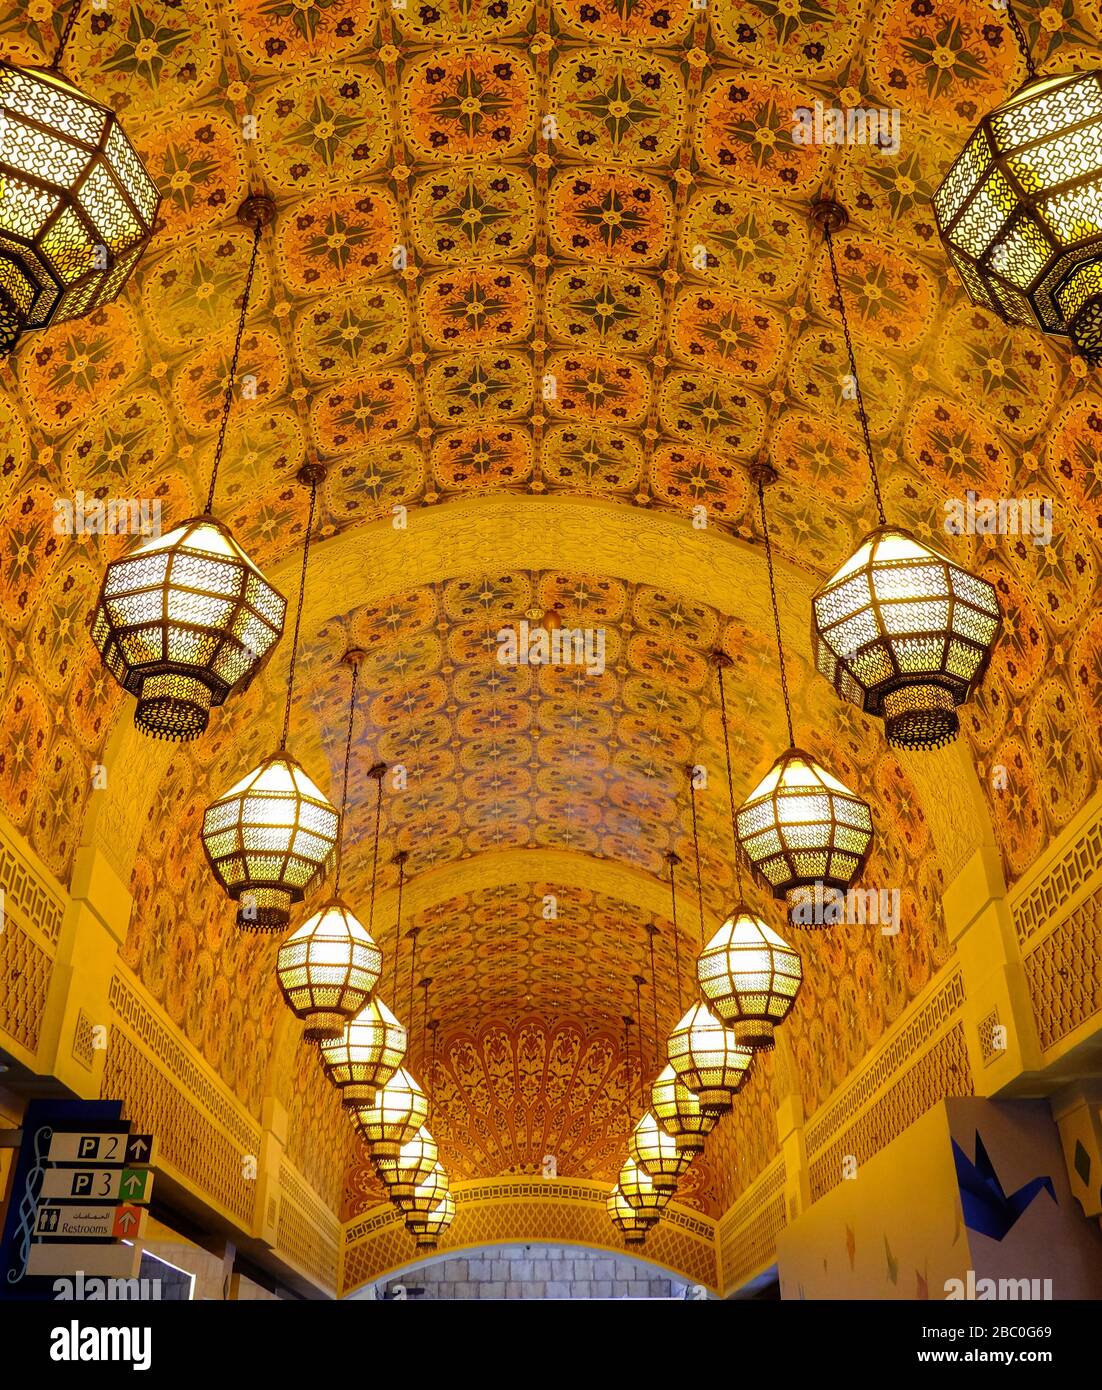 Corridoio con motivi d'arte islamici nella Persia Court all'interno del Centro commerciale Ibn Buttata, Dubai, Emirati Arabi Uniti. Foto Stock